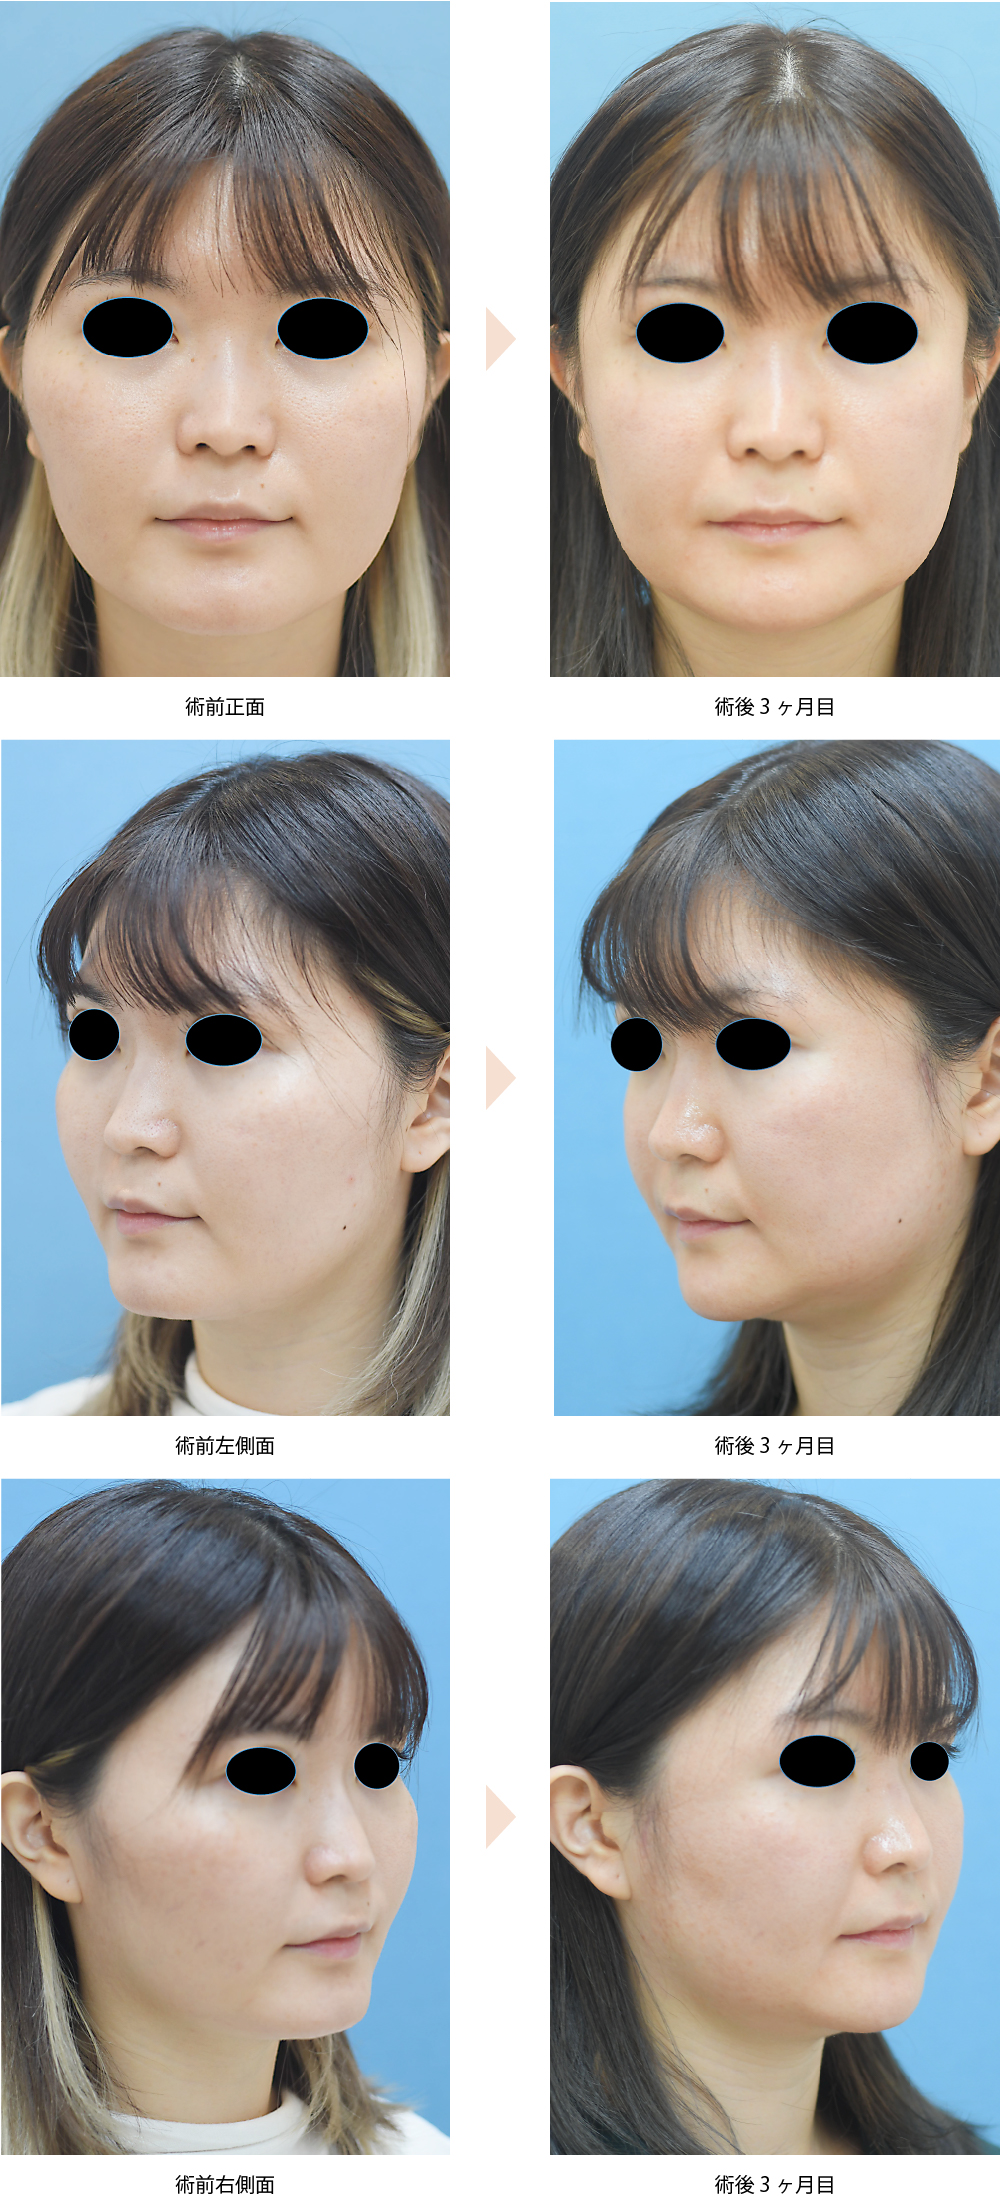 「頬骨整形／頬骨骨切り・骨削り術（体部＋弓部／頬の突出・顔の余白改善）」の症例写真・ビフォーアフター